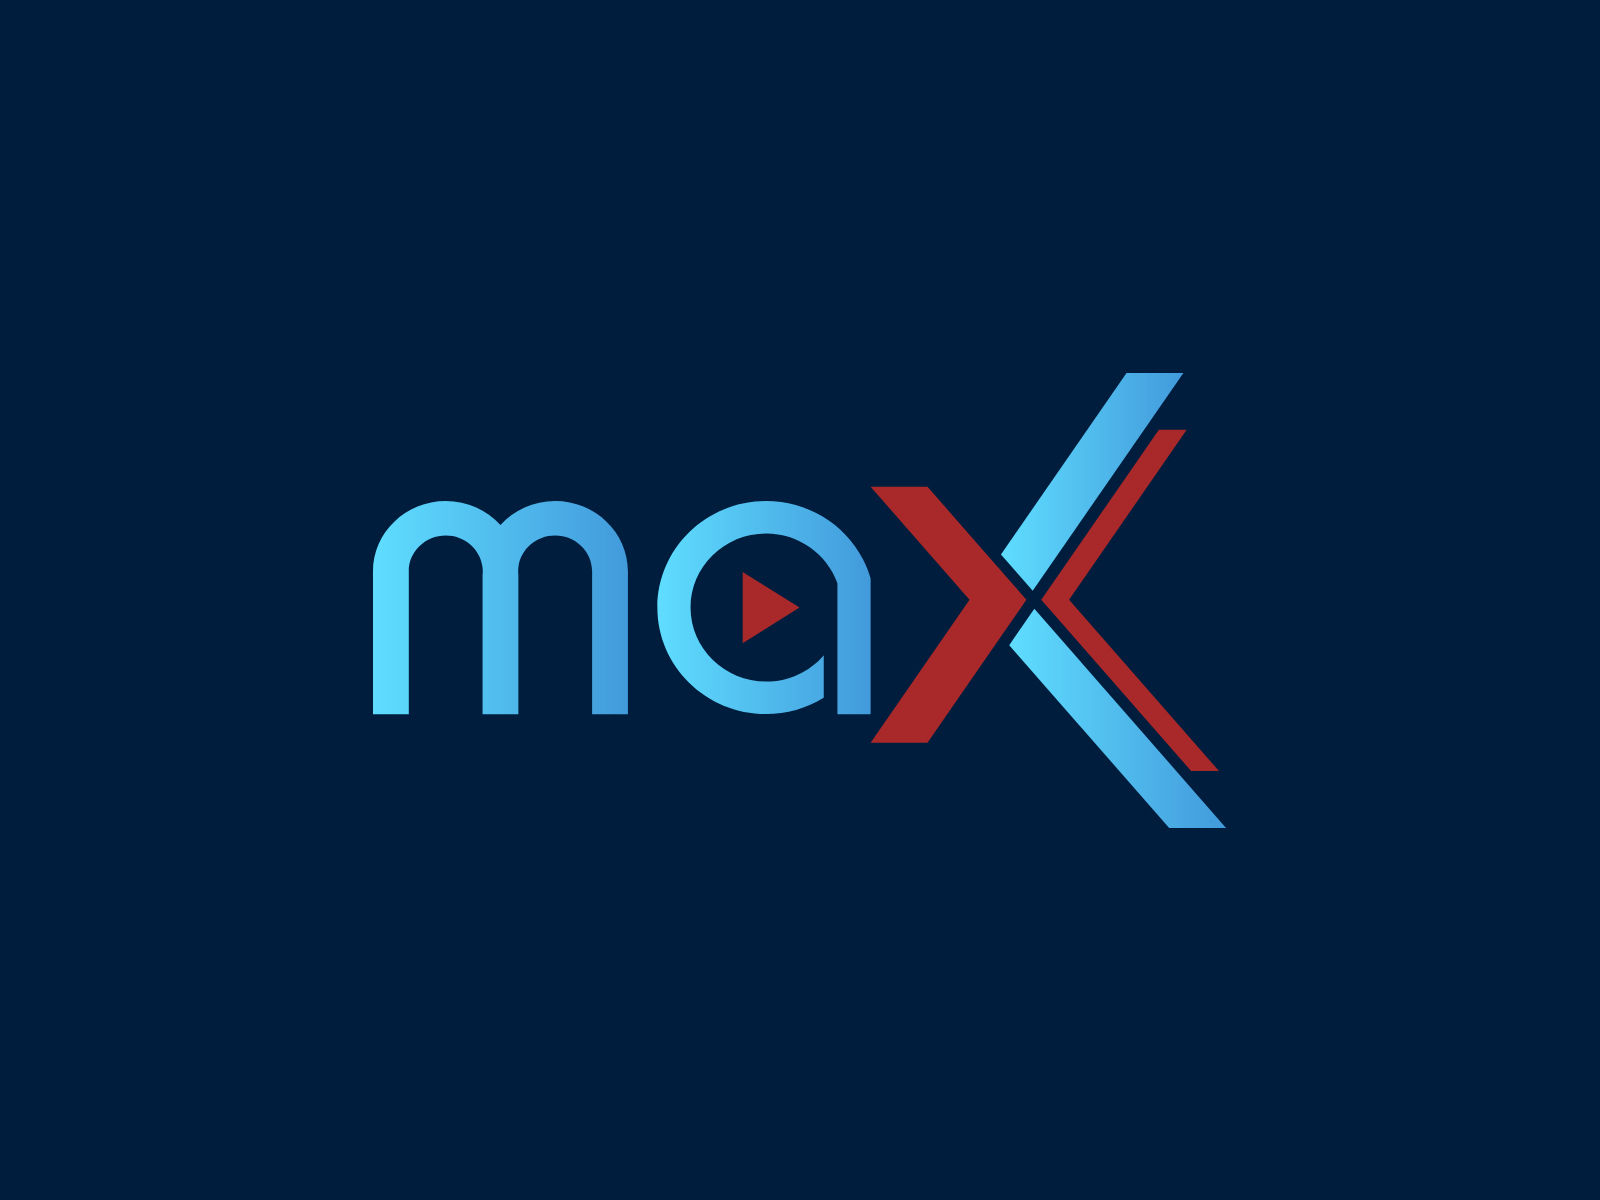 Max logo by Rakhee K on Dribbble